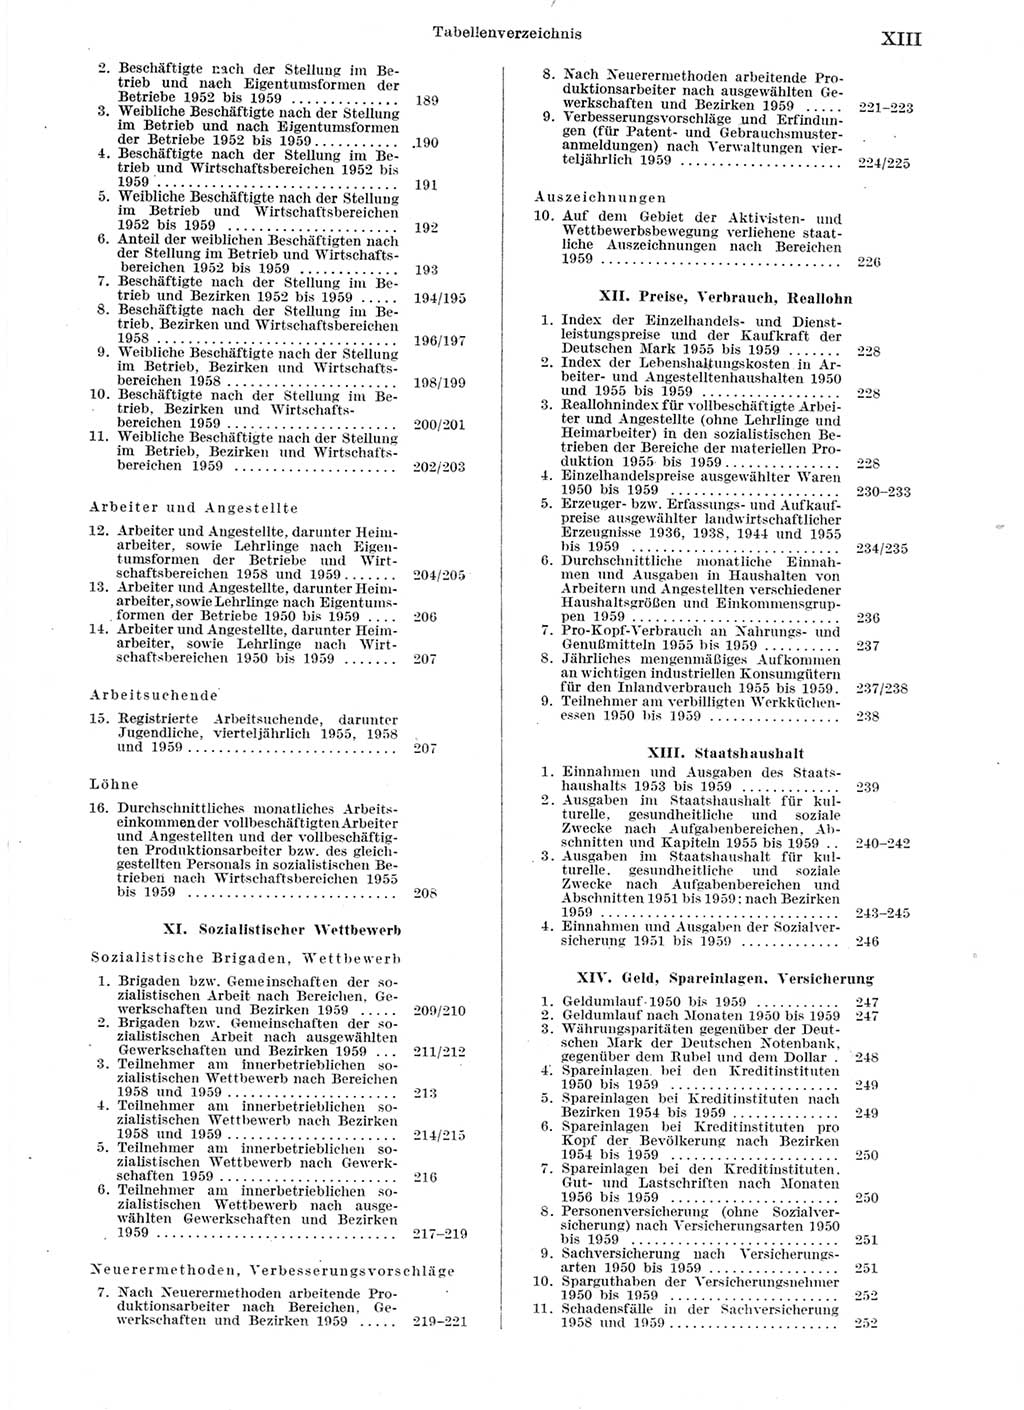 Statistisches Jahrbuch der Deutschen Demokratischen Republik (DDR) 1959, Seite 13 (Stat. Jb. DDR 1959, S. 13)